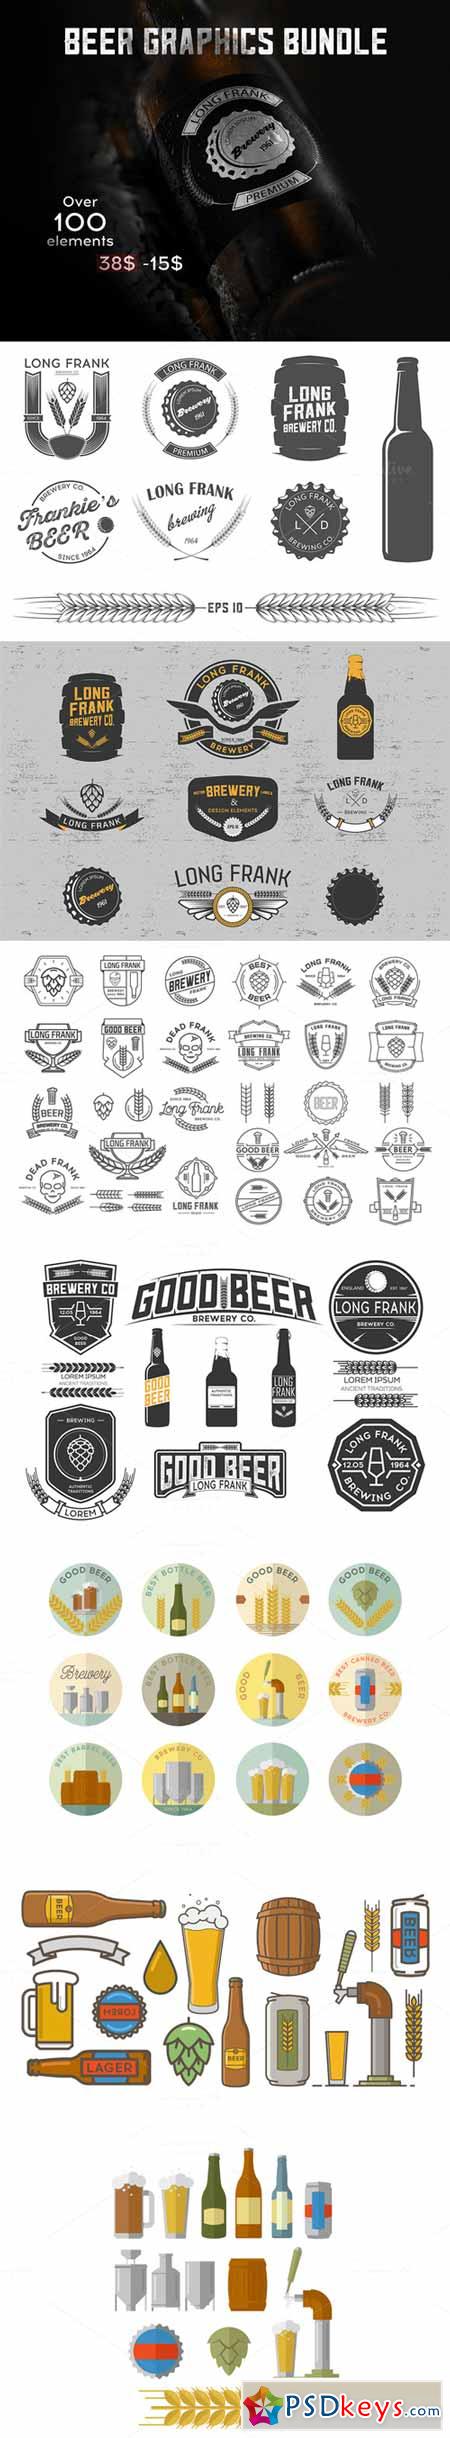 Beer graphics vector bundle 376778